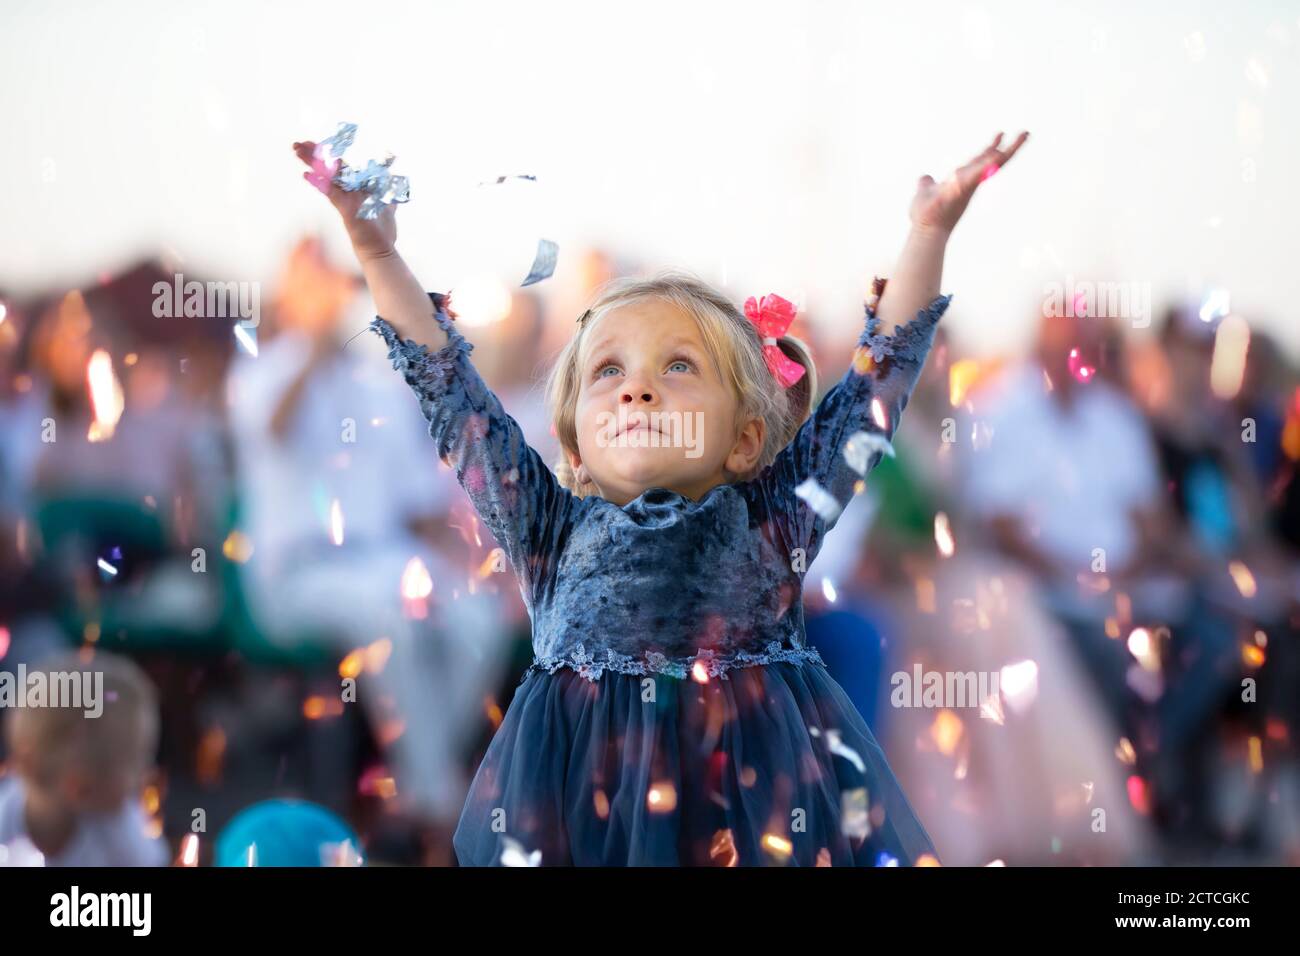 08 29 2020 Weißrussland, Ljaskowitschi. Party in der Stadt.Lustige kleine Mädchen auf einem Urlaub. Stockfoto